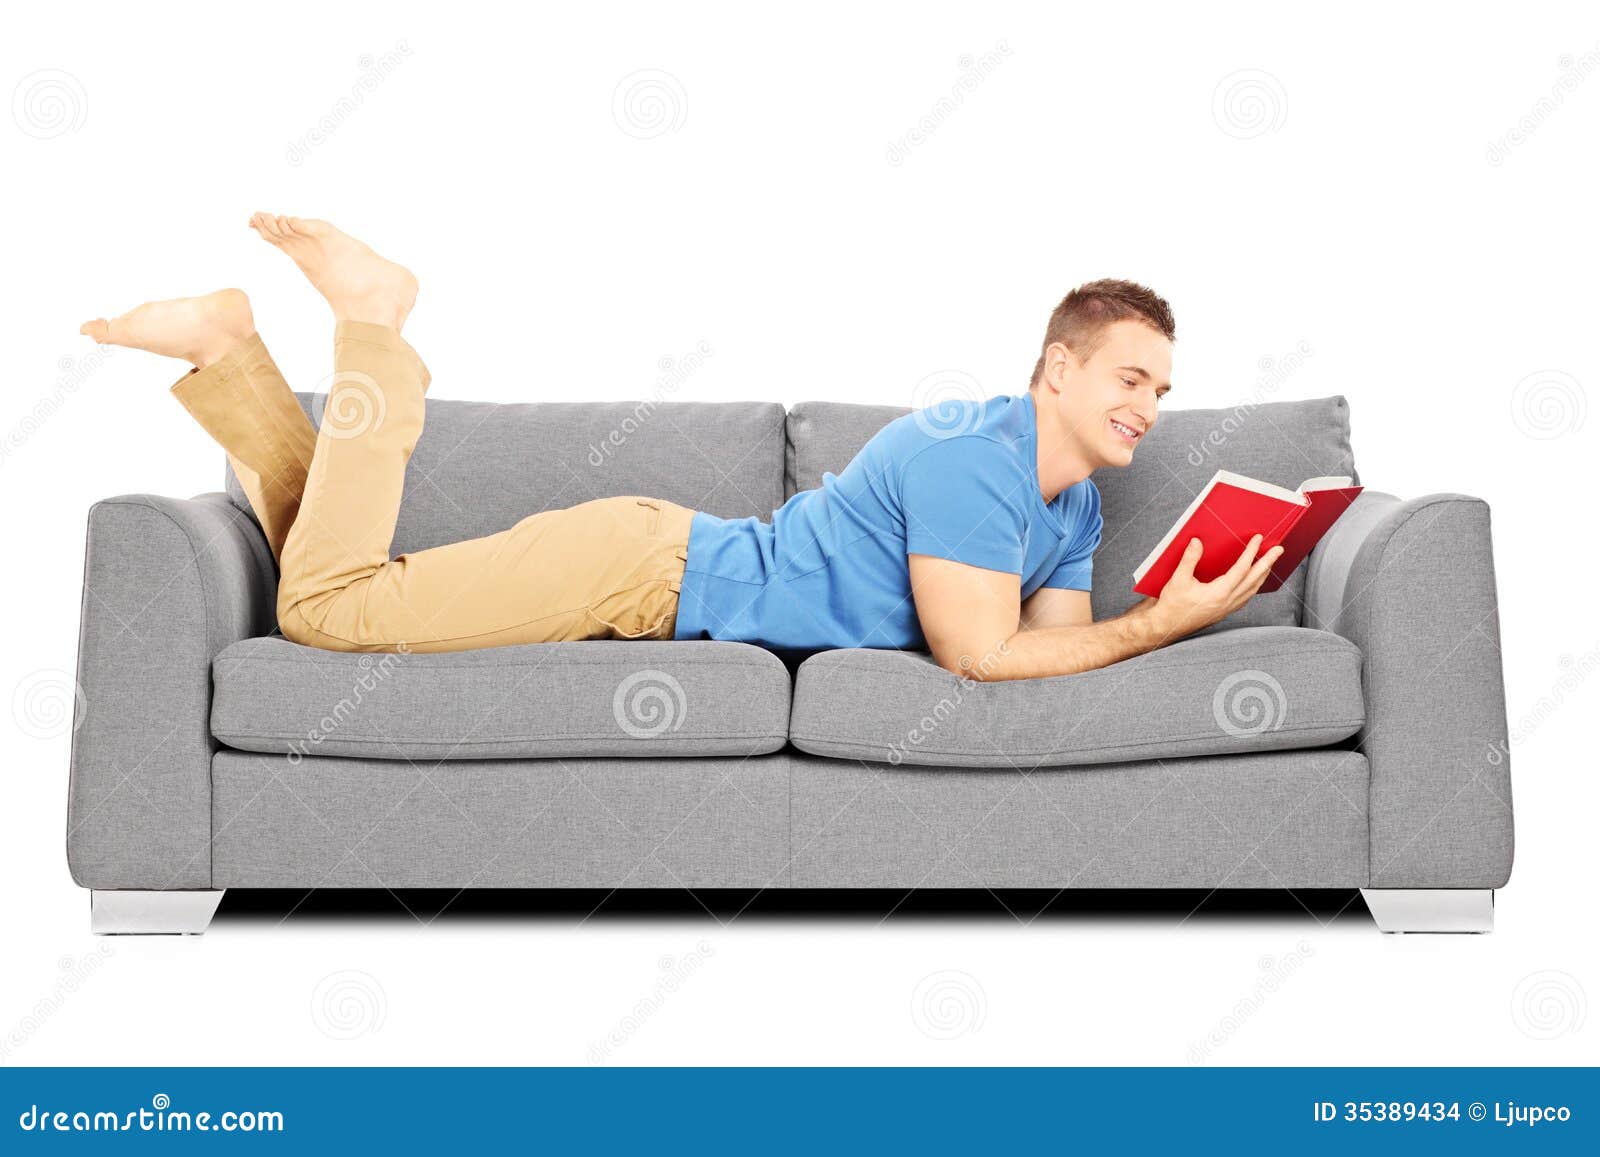 Читать лежа вредно лежа на горячем песке. Человек на диване. Мужик лежит на диване. Мальчик лежит на диване. Чел лежит на диване.